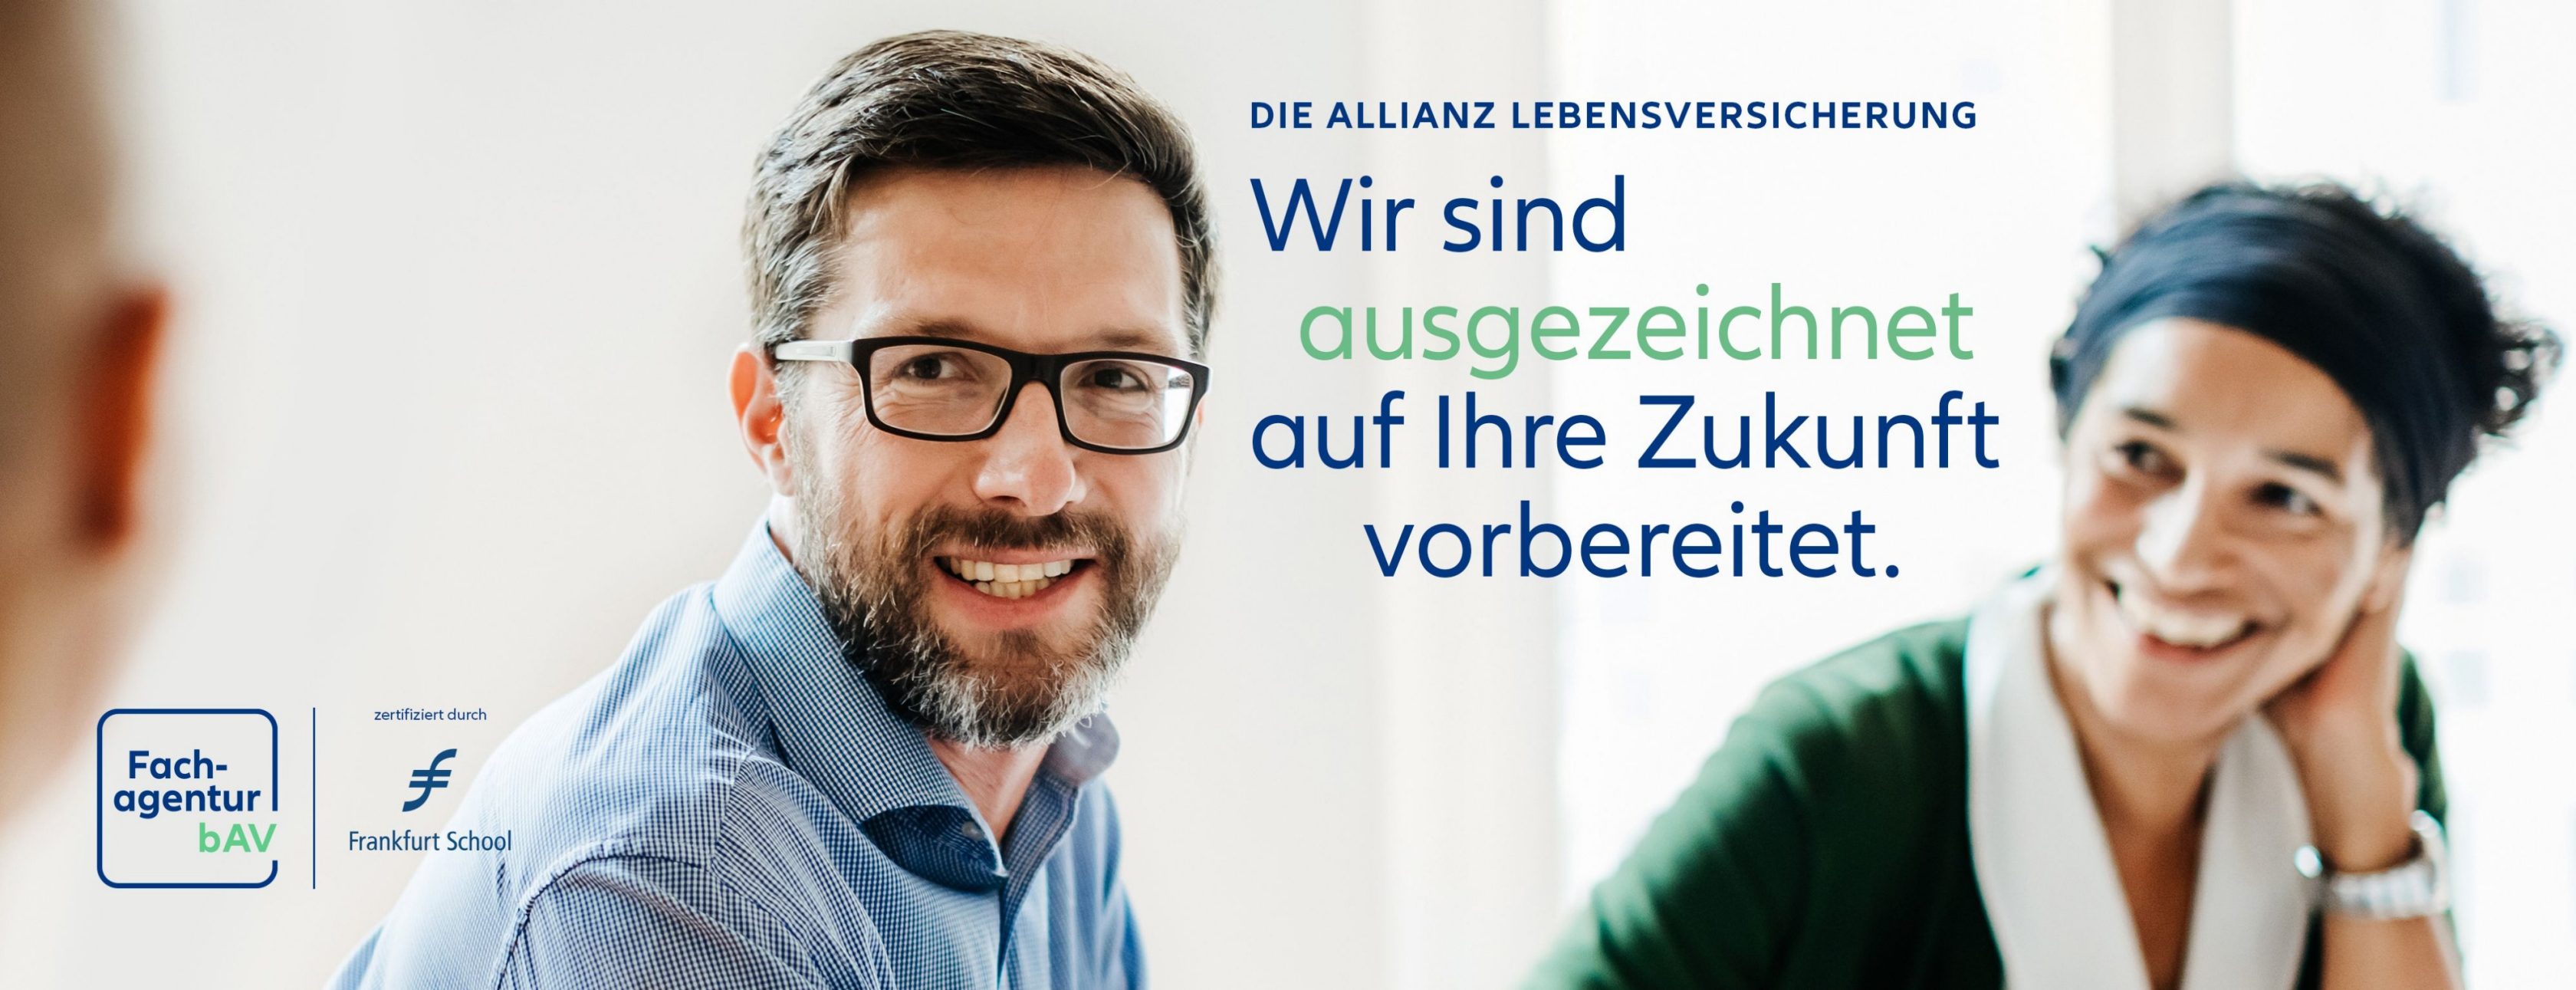 Allianz Versicherung Maximilian Stiemer Gräfelfing - Allianz Fachagentur bAV Lebensversicherung Presse